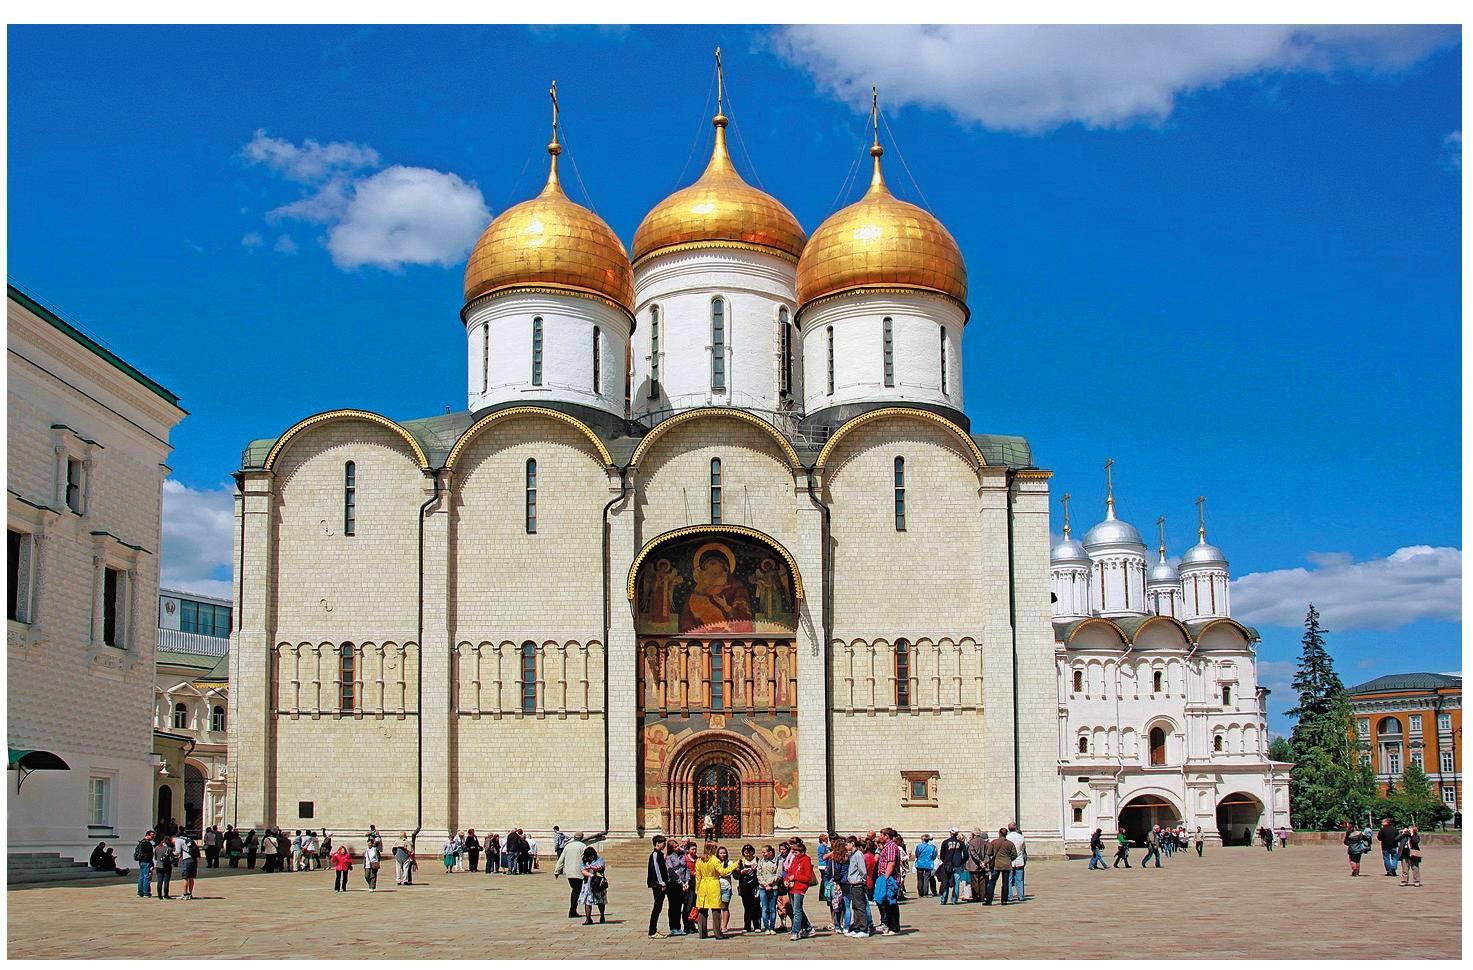 В 17 веке созданные россии памятники